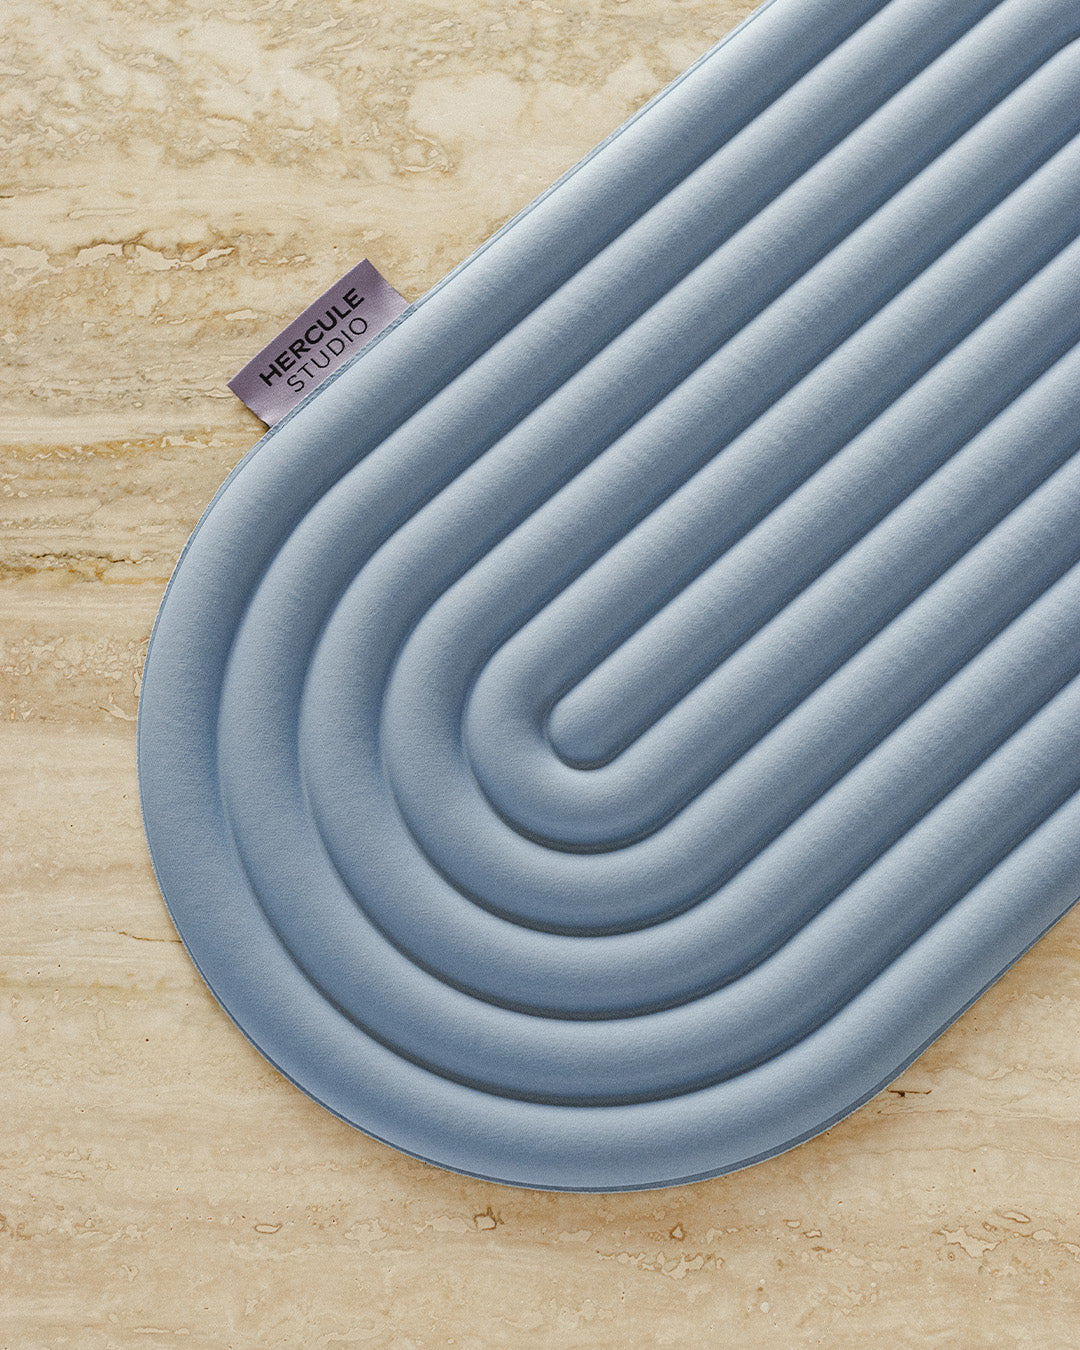 Mini tapis de sol pad de confort de la marque hercule studio modèle galé couleur blue jean packshot lifestyle sur marbre